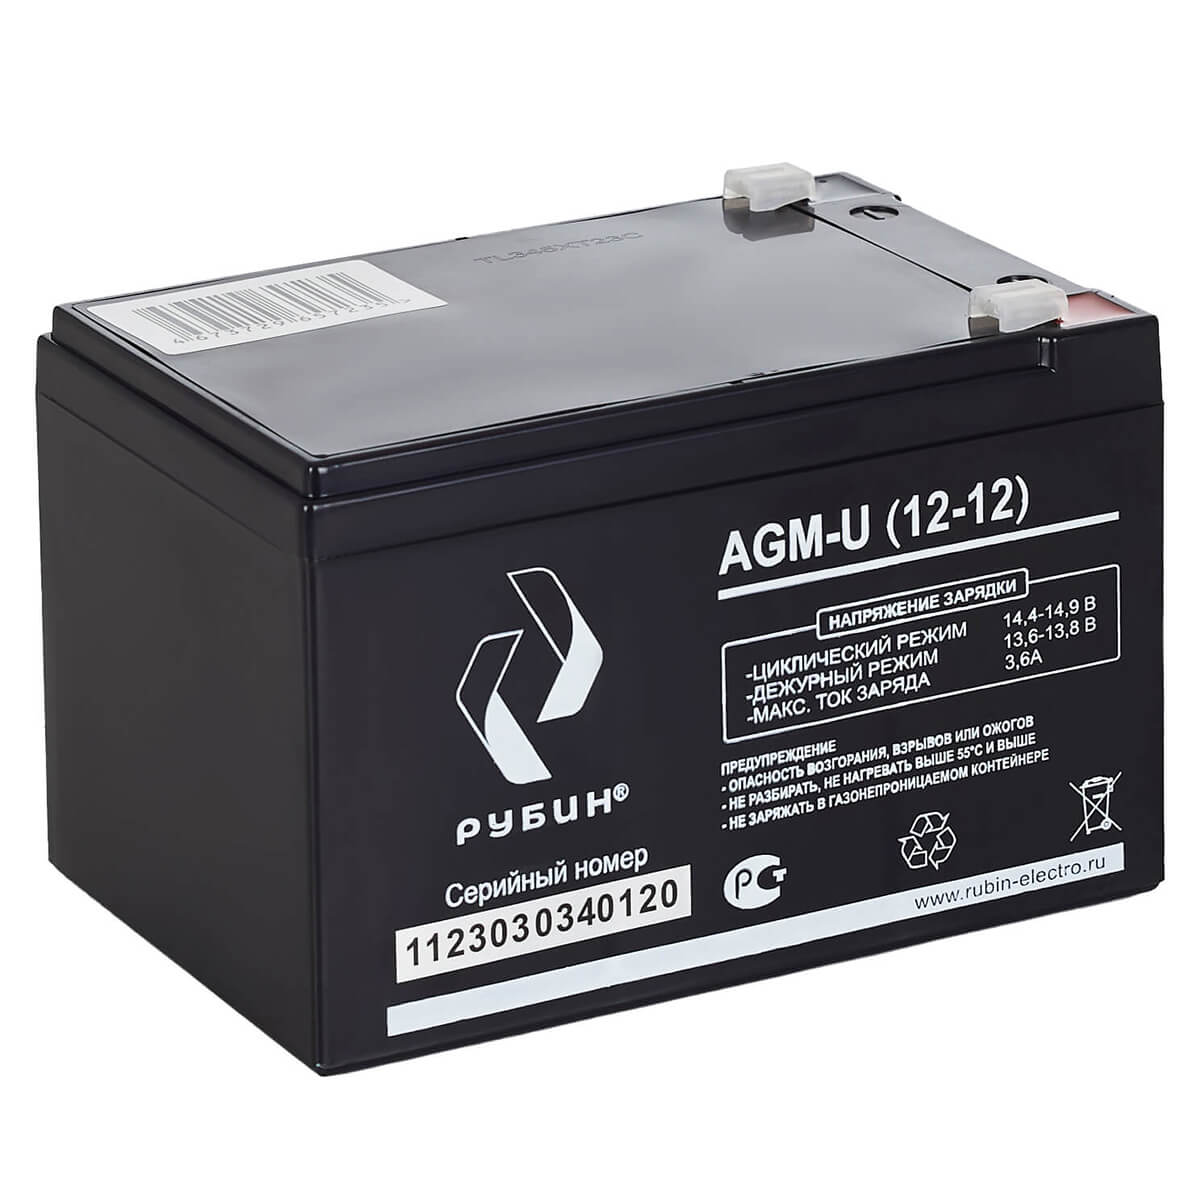 Рубин AGM-U (12-12)